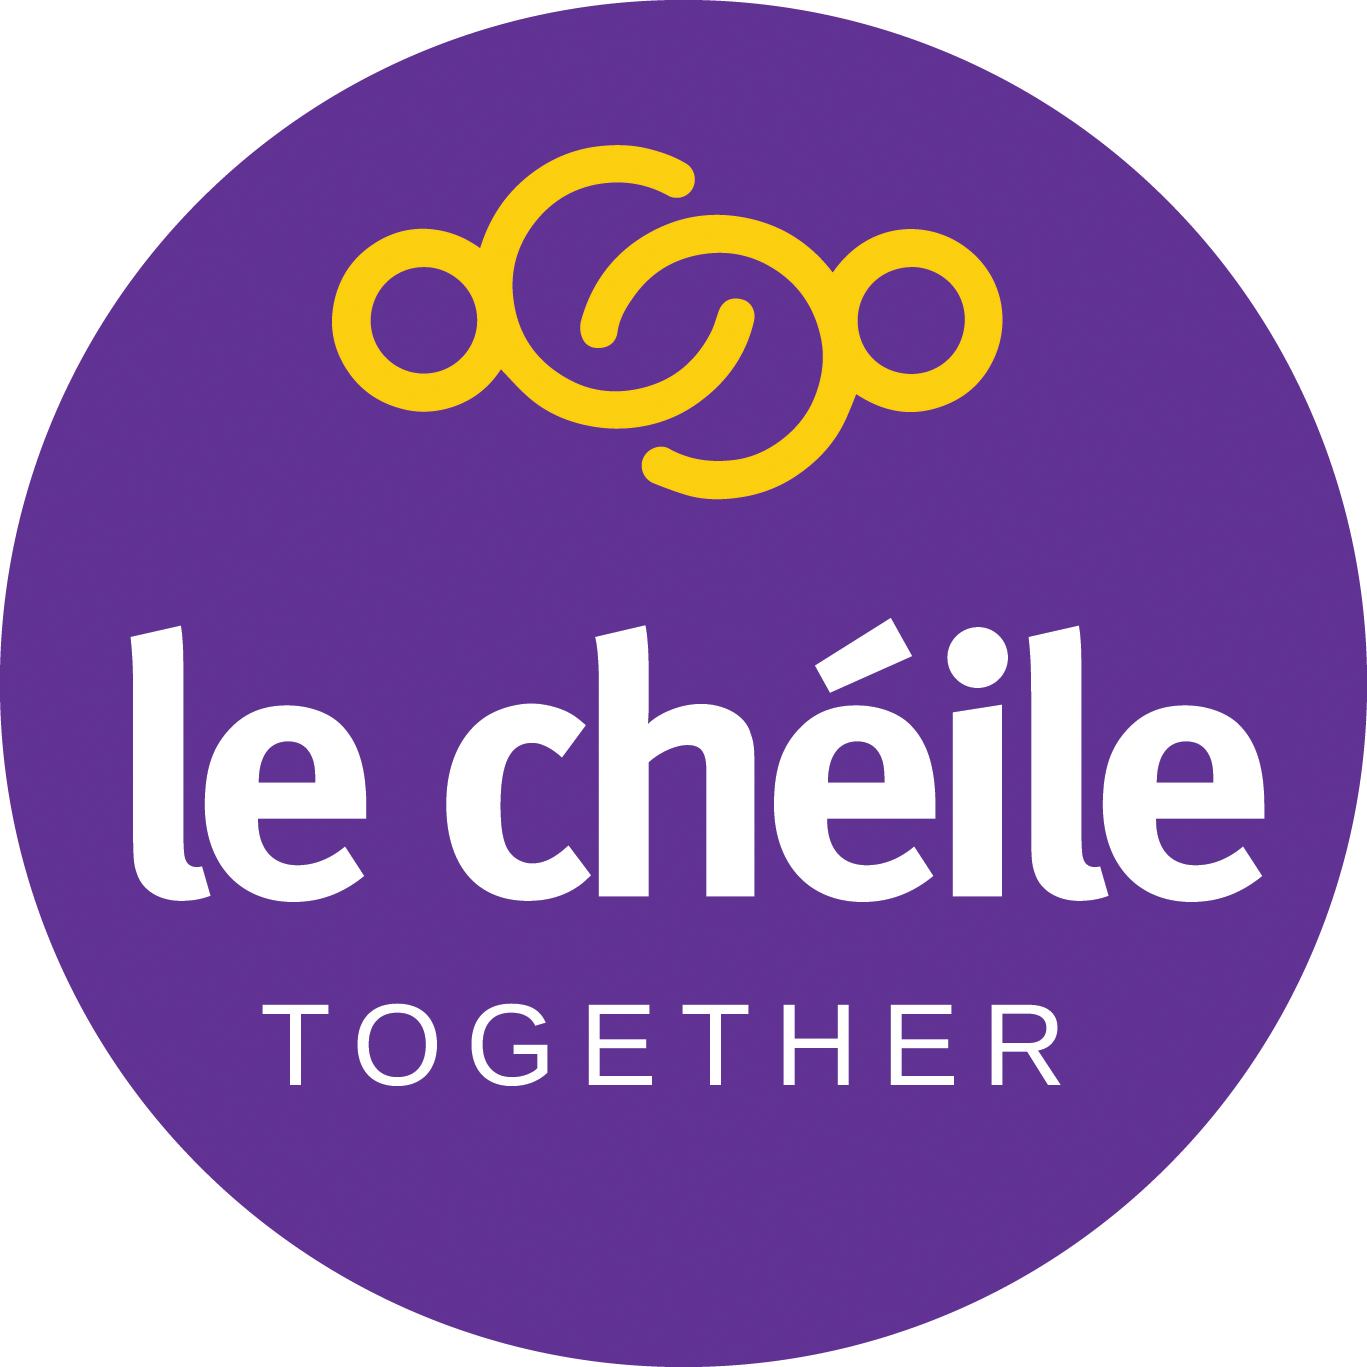 le chéile together logo